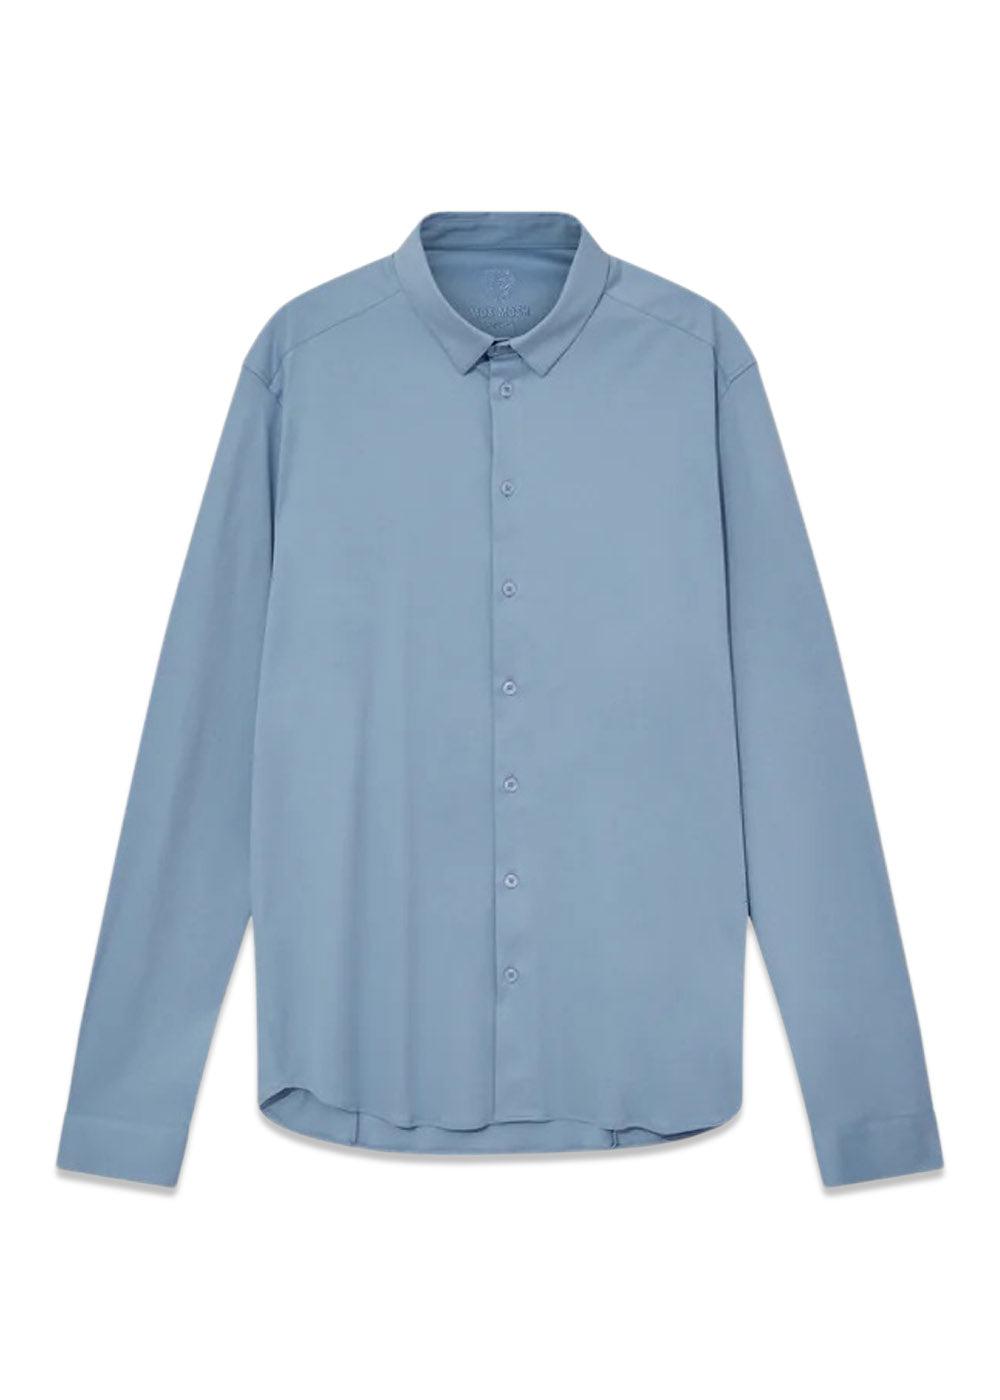 MMGMarco Crunch Jersey Shirt - Bel Air Blue